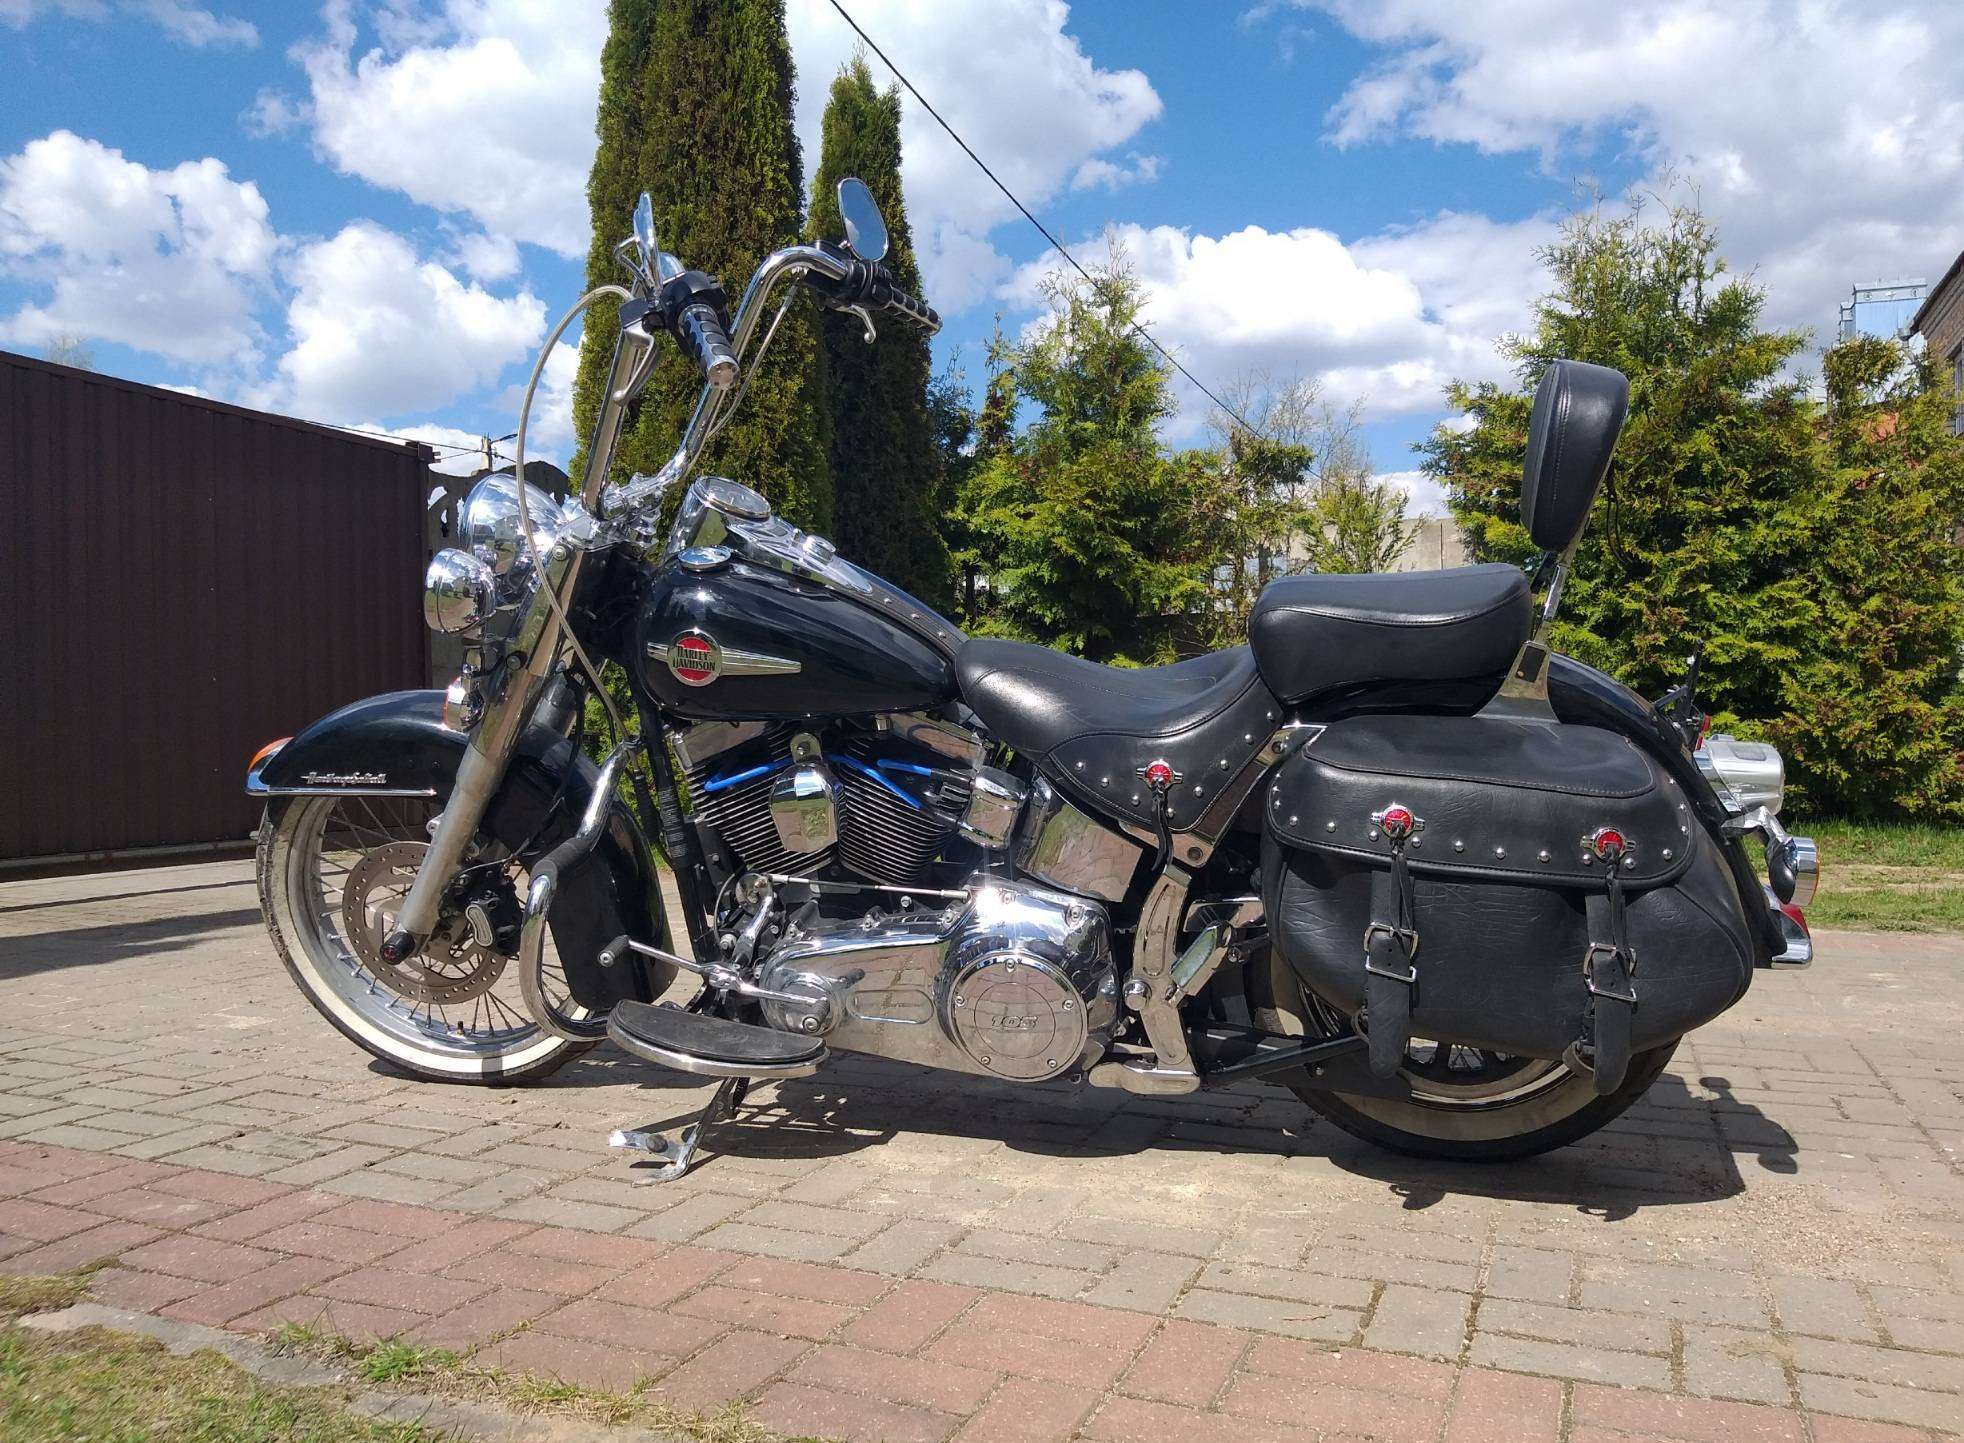 Купить мотоцикл Harley-Davidson в Беларуси в кредит - цены, характеристики, фото. 